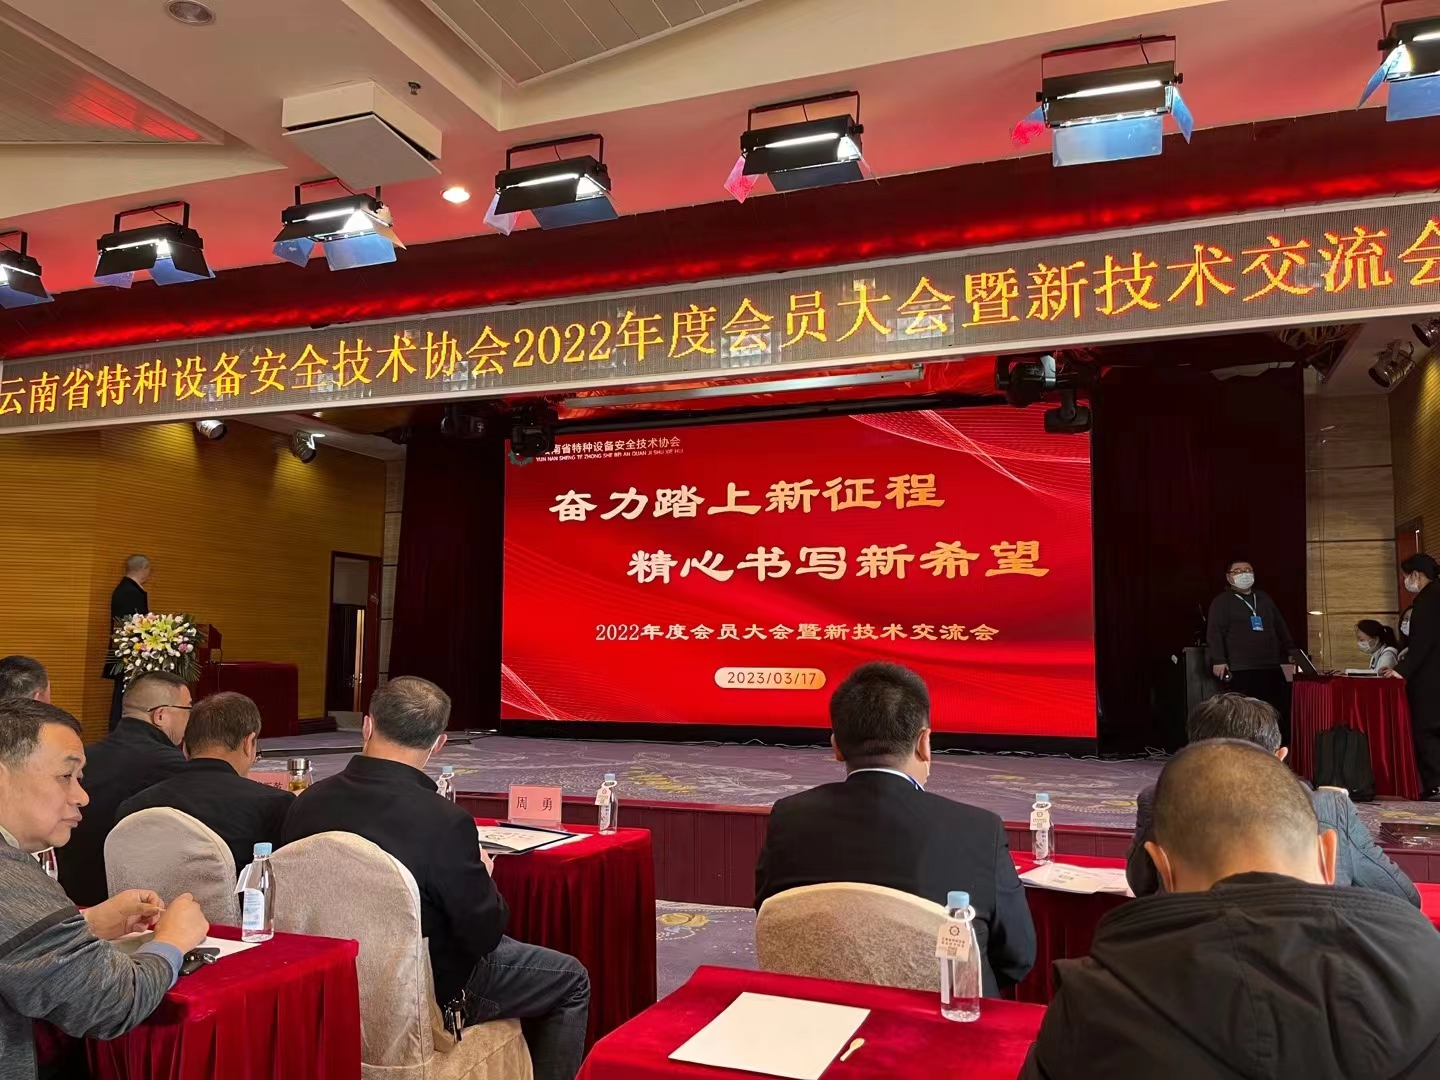 预祝云南省特种设备安全技术协会2022年度大会顺利召开